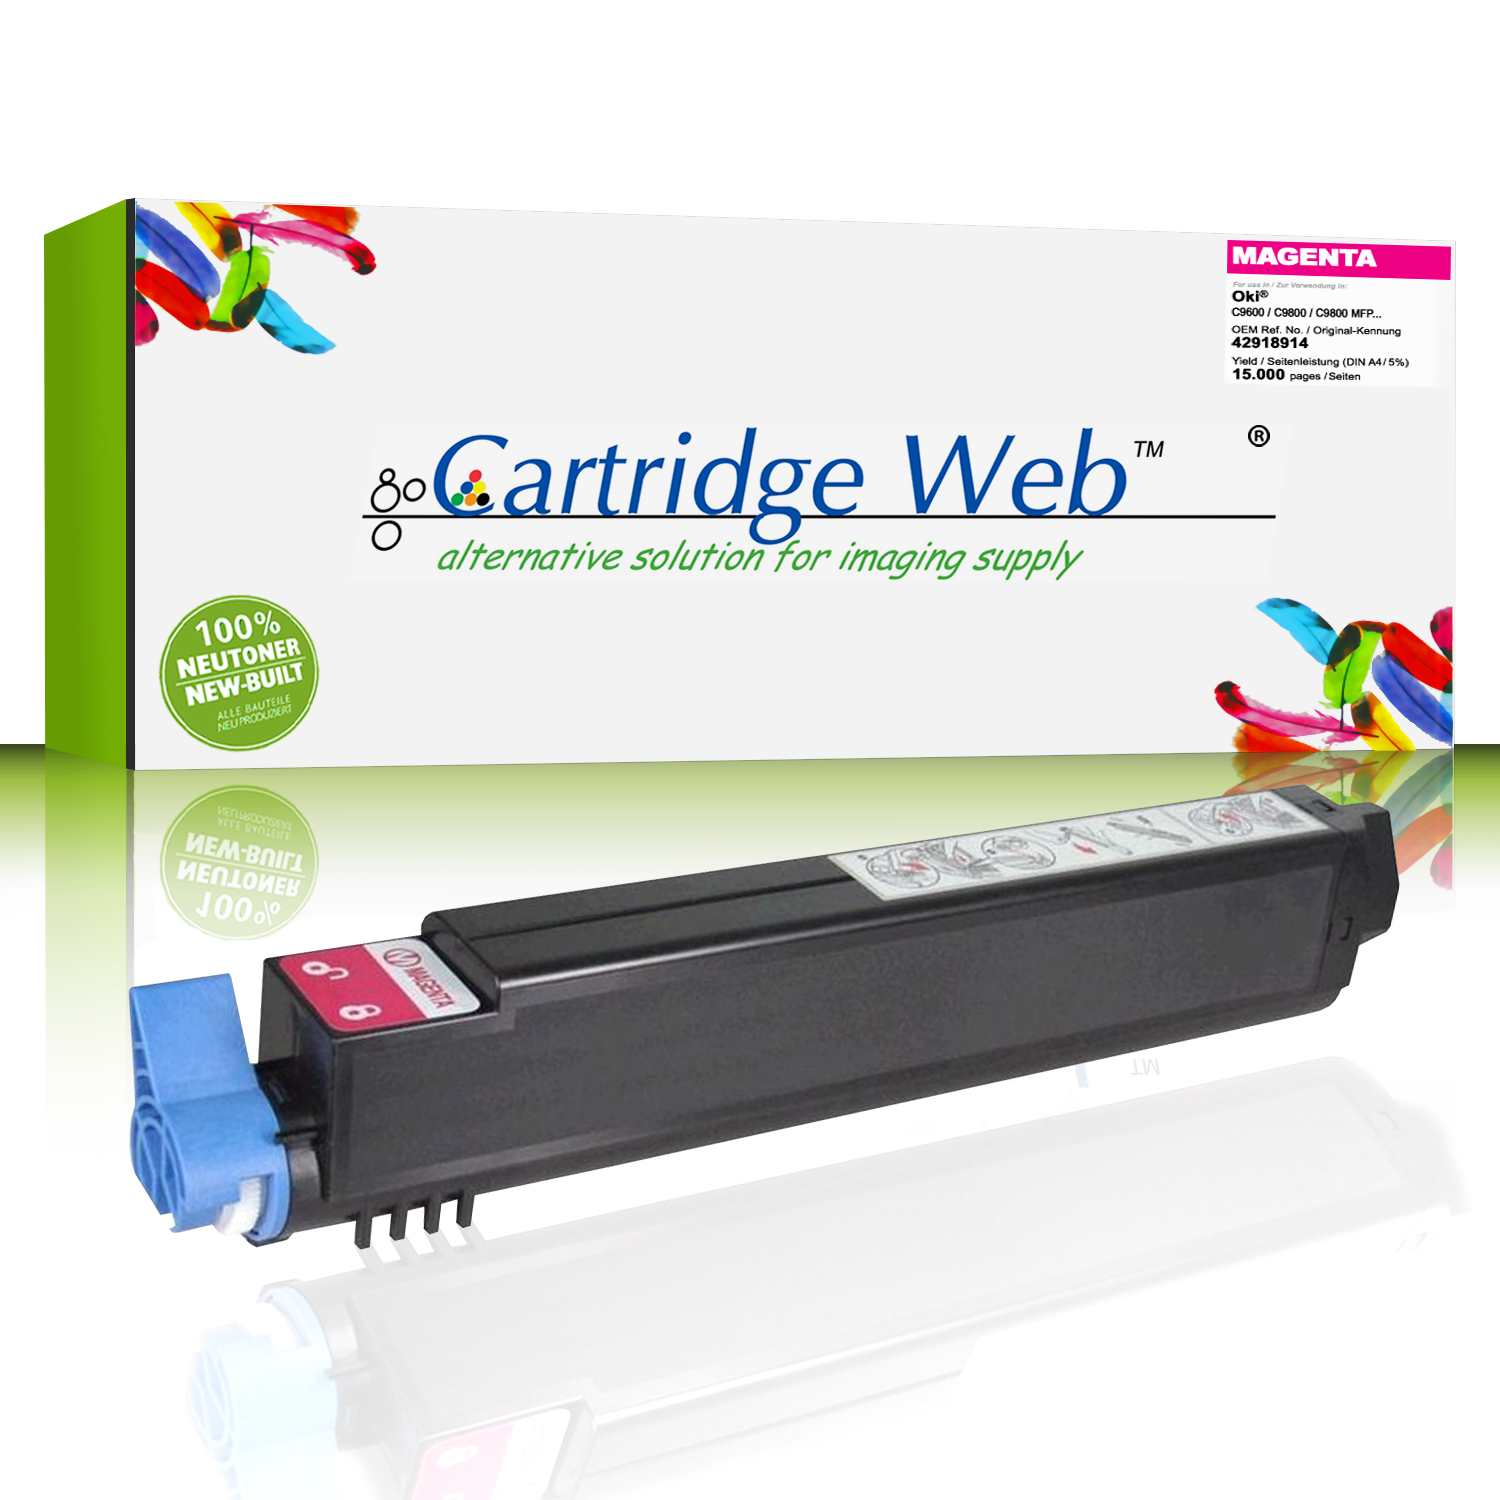 CartridgeWeb Toner kompatibel zu Oki 42918914 magenta 15.000 Seiten